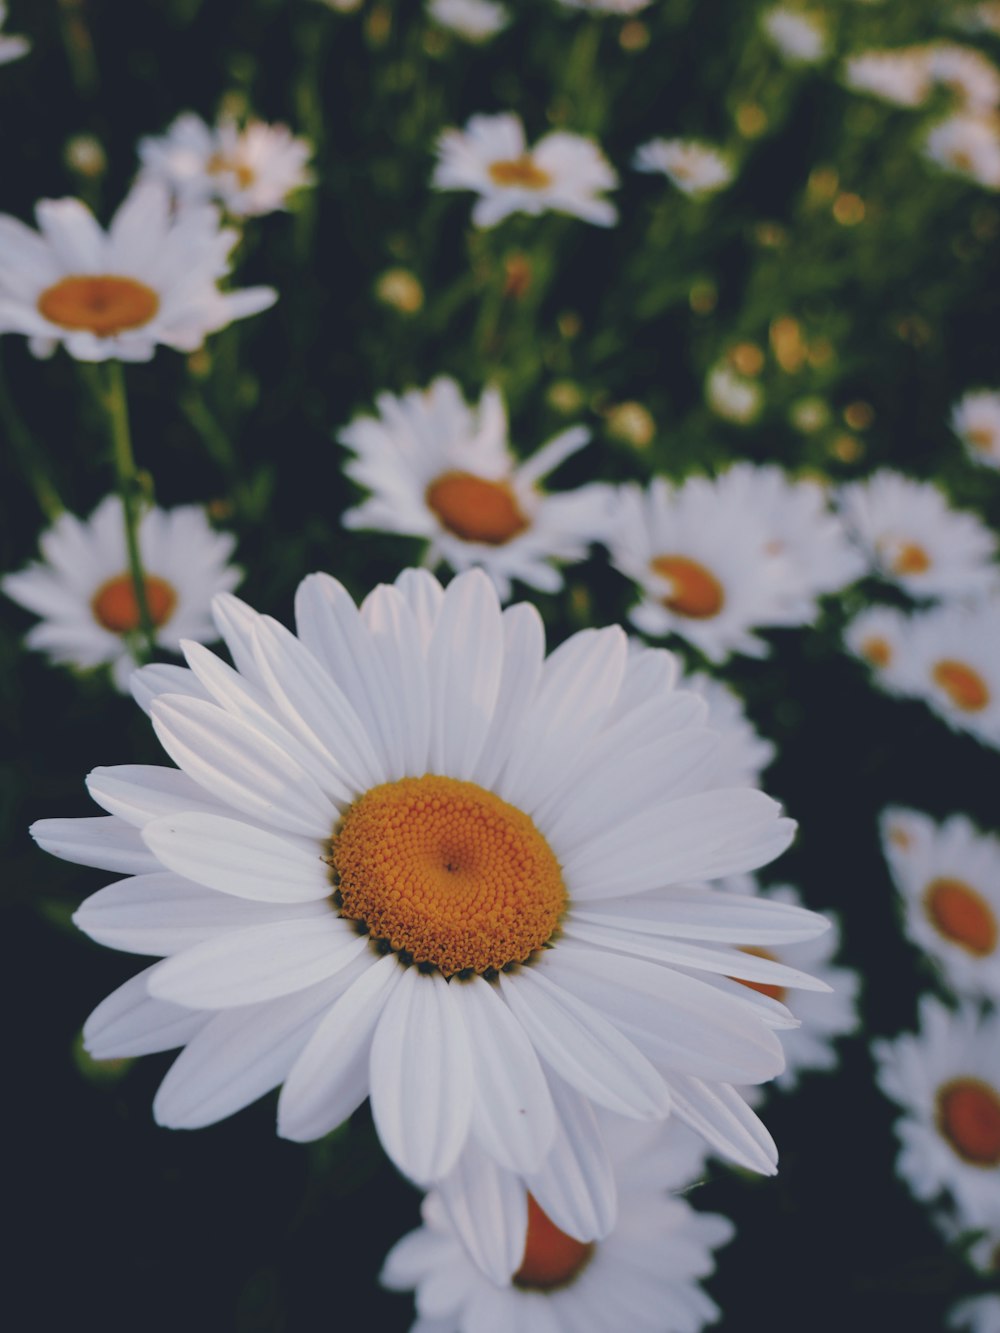 Fiore bianco della margherita in fiore durante il giorno